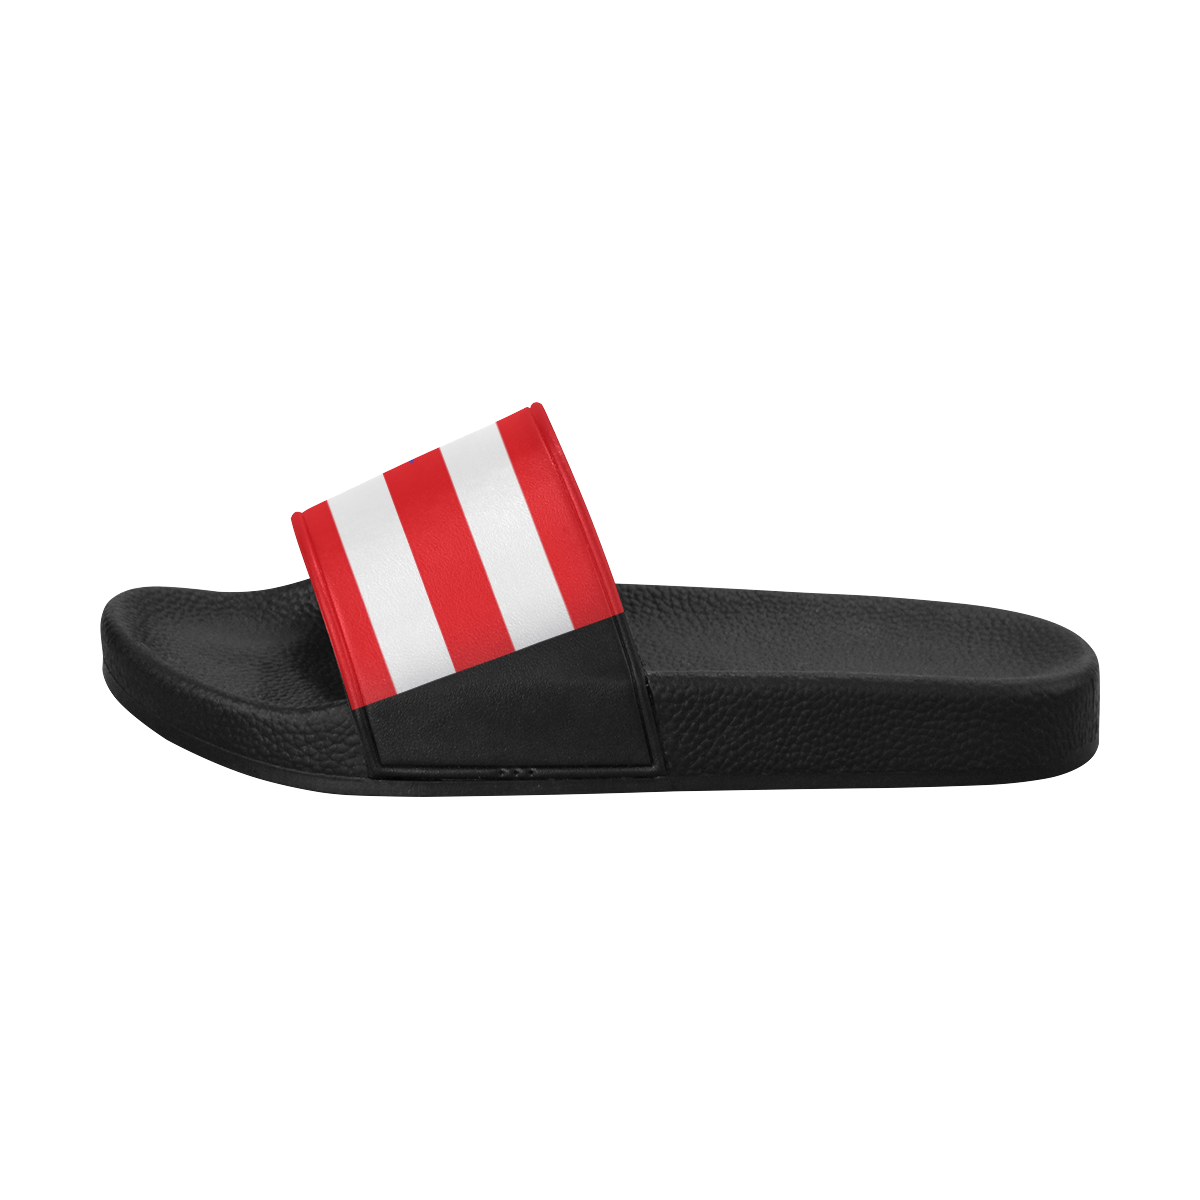 Puerto Rico Flag Men's Slide Sandals (Model 057)